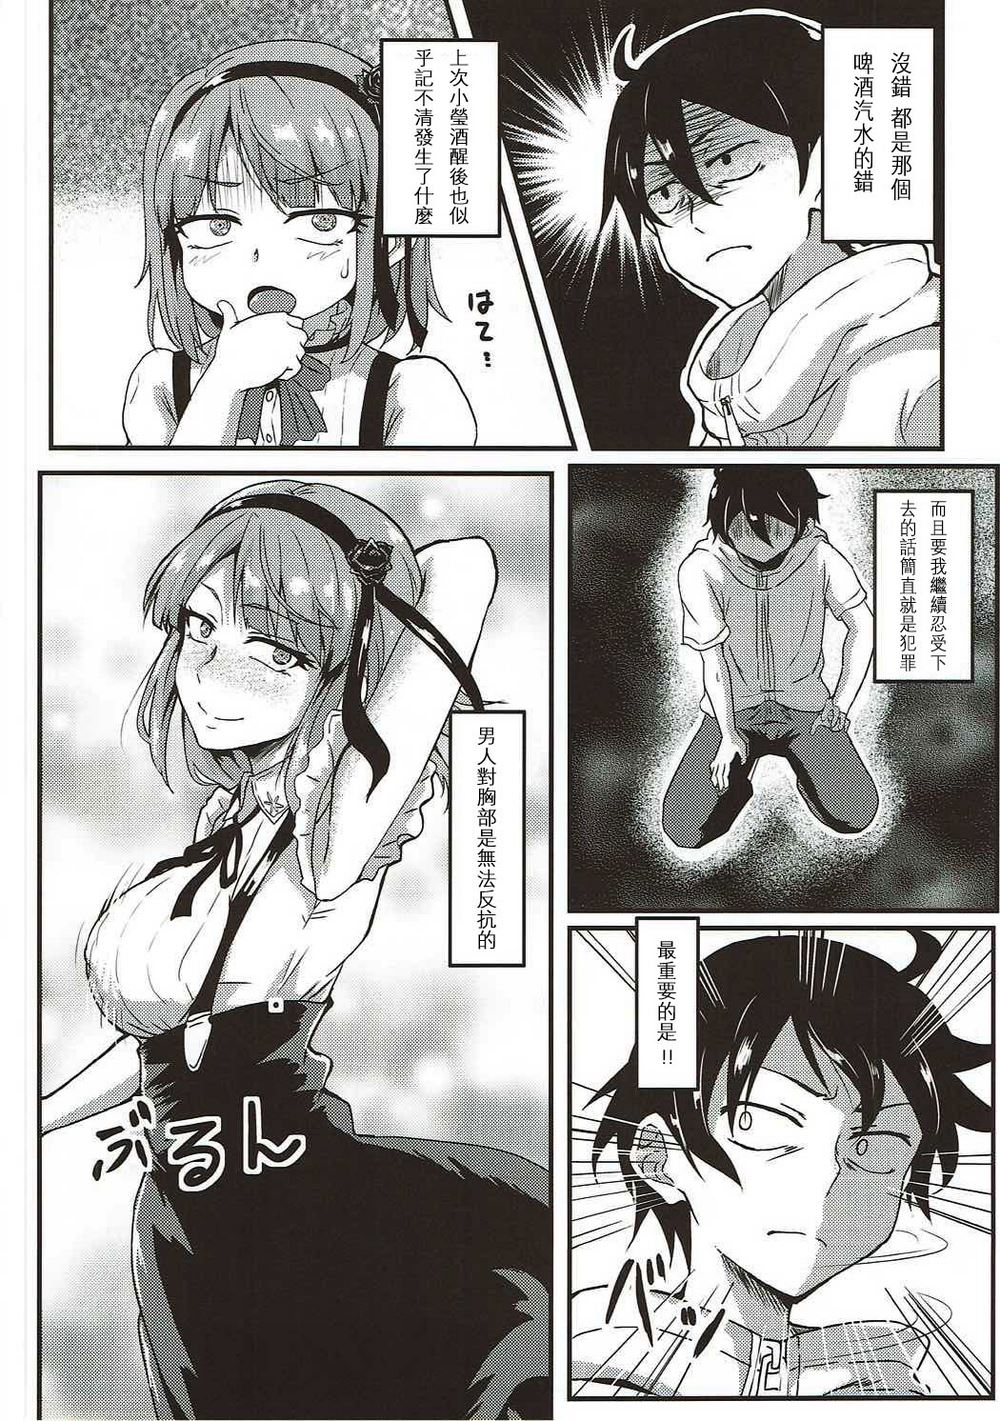 日本恶动邪画爱丽丝无遮家庭教师 老师晕倒被学生桶的漫画